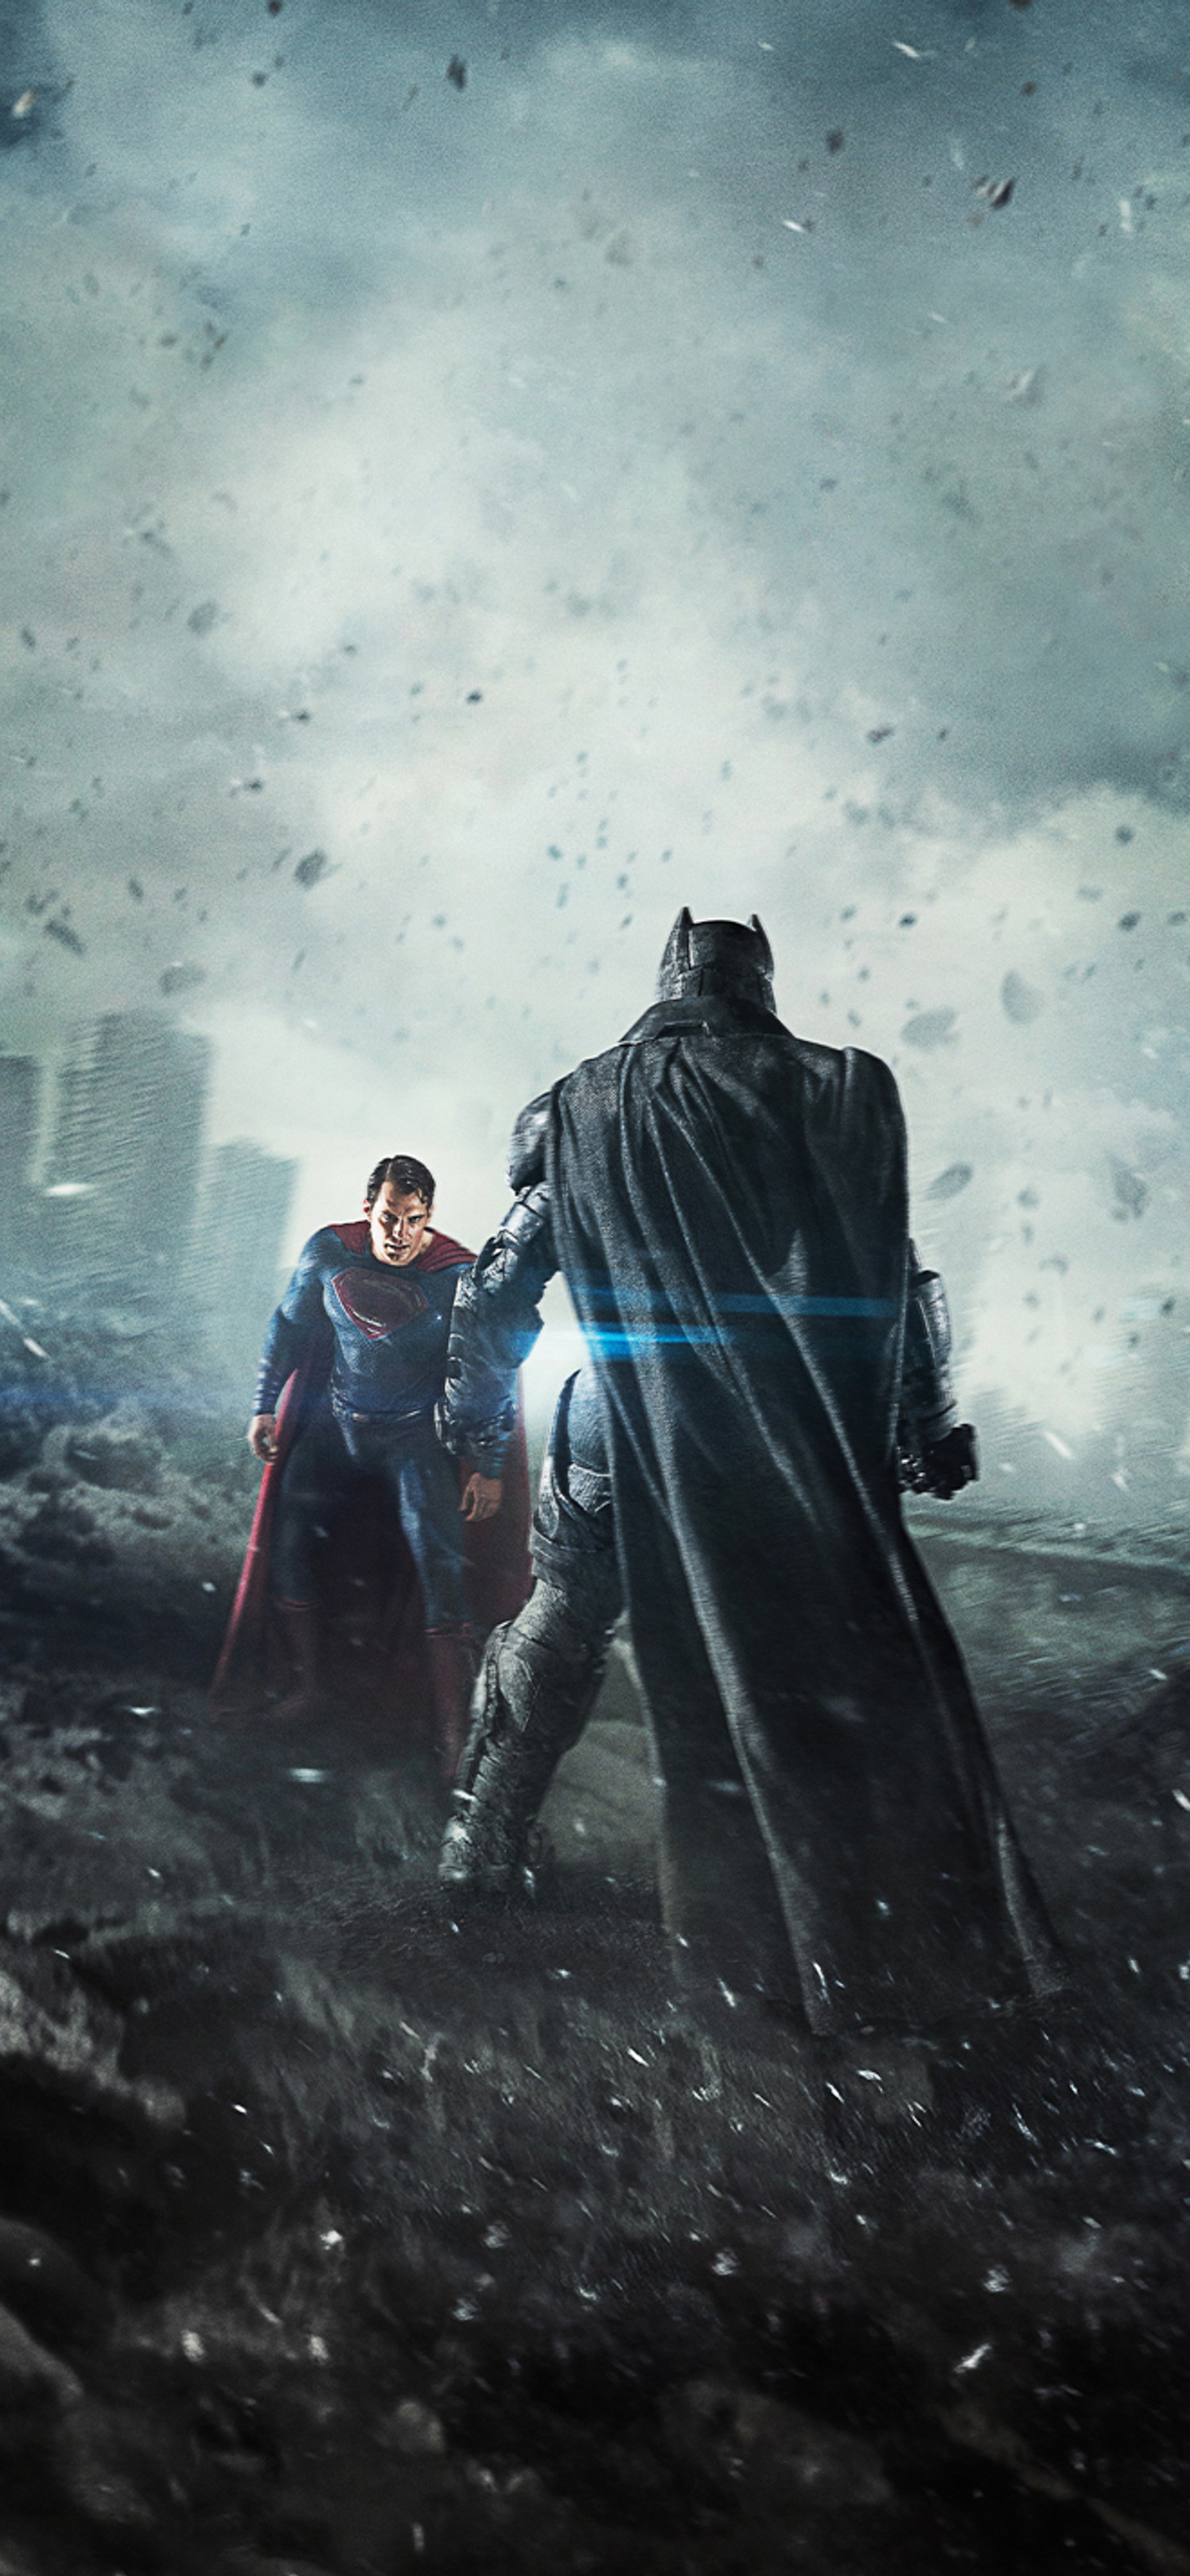 DC电影好莱坞巨制“蝙蝠侠大战超人之正义联盟”超清人物手机壁纸图片